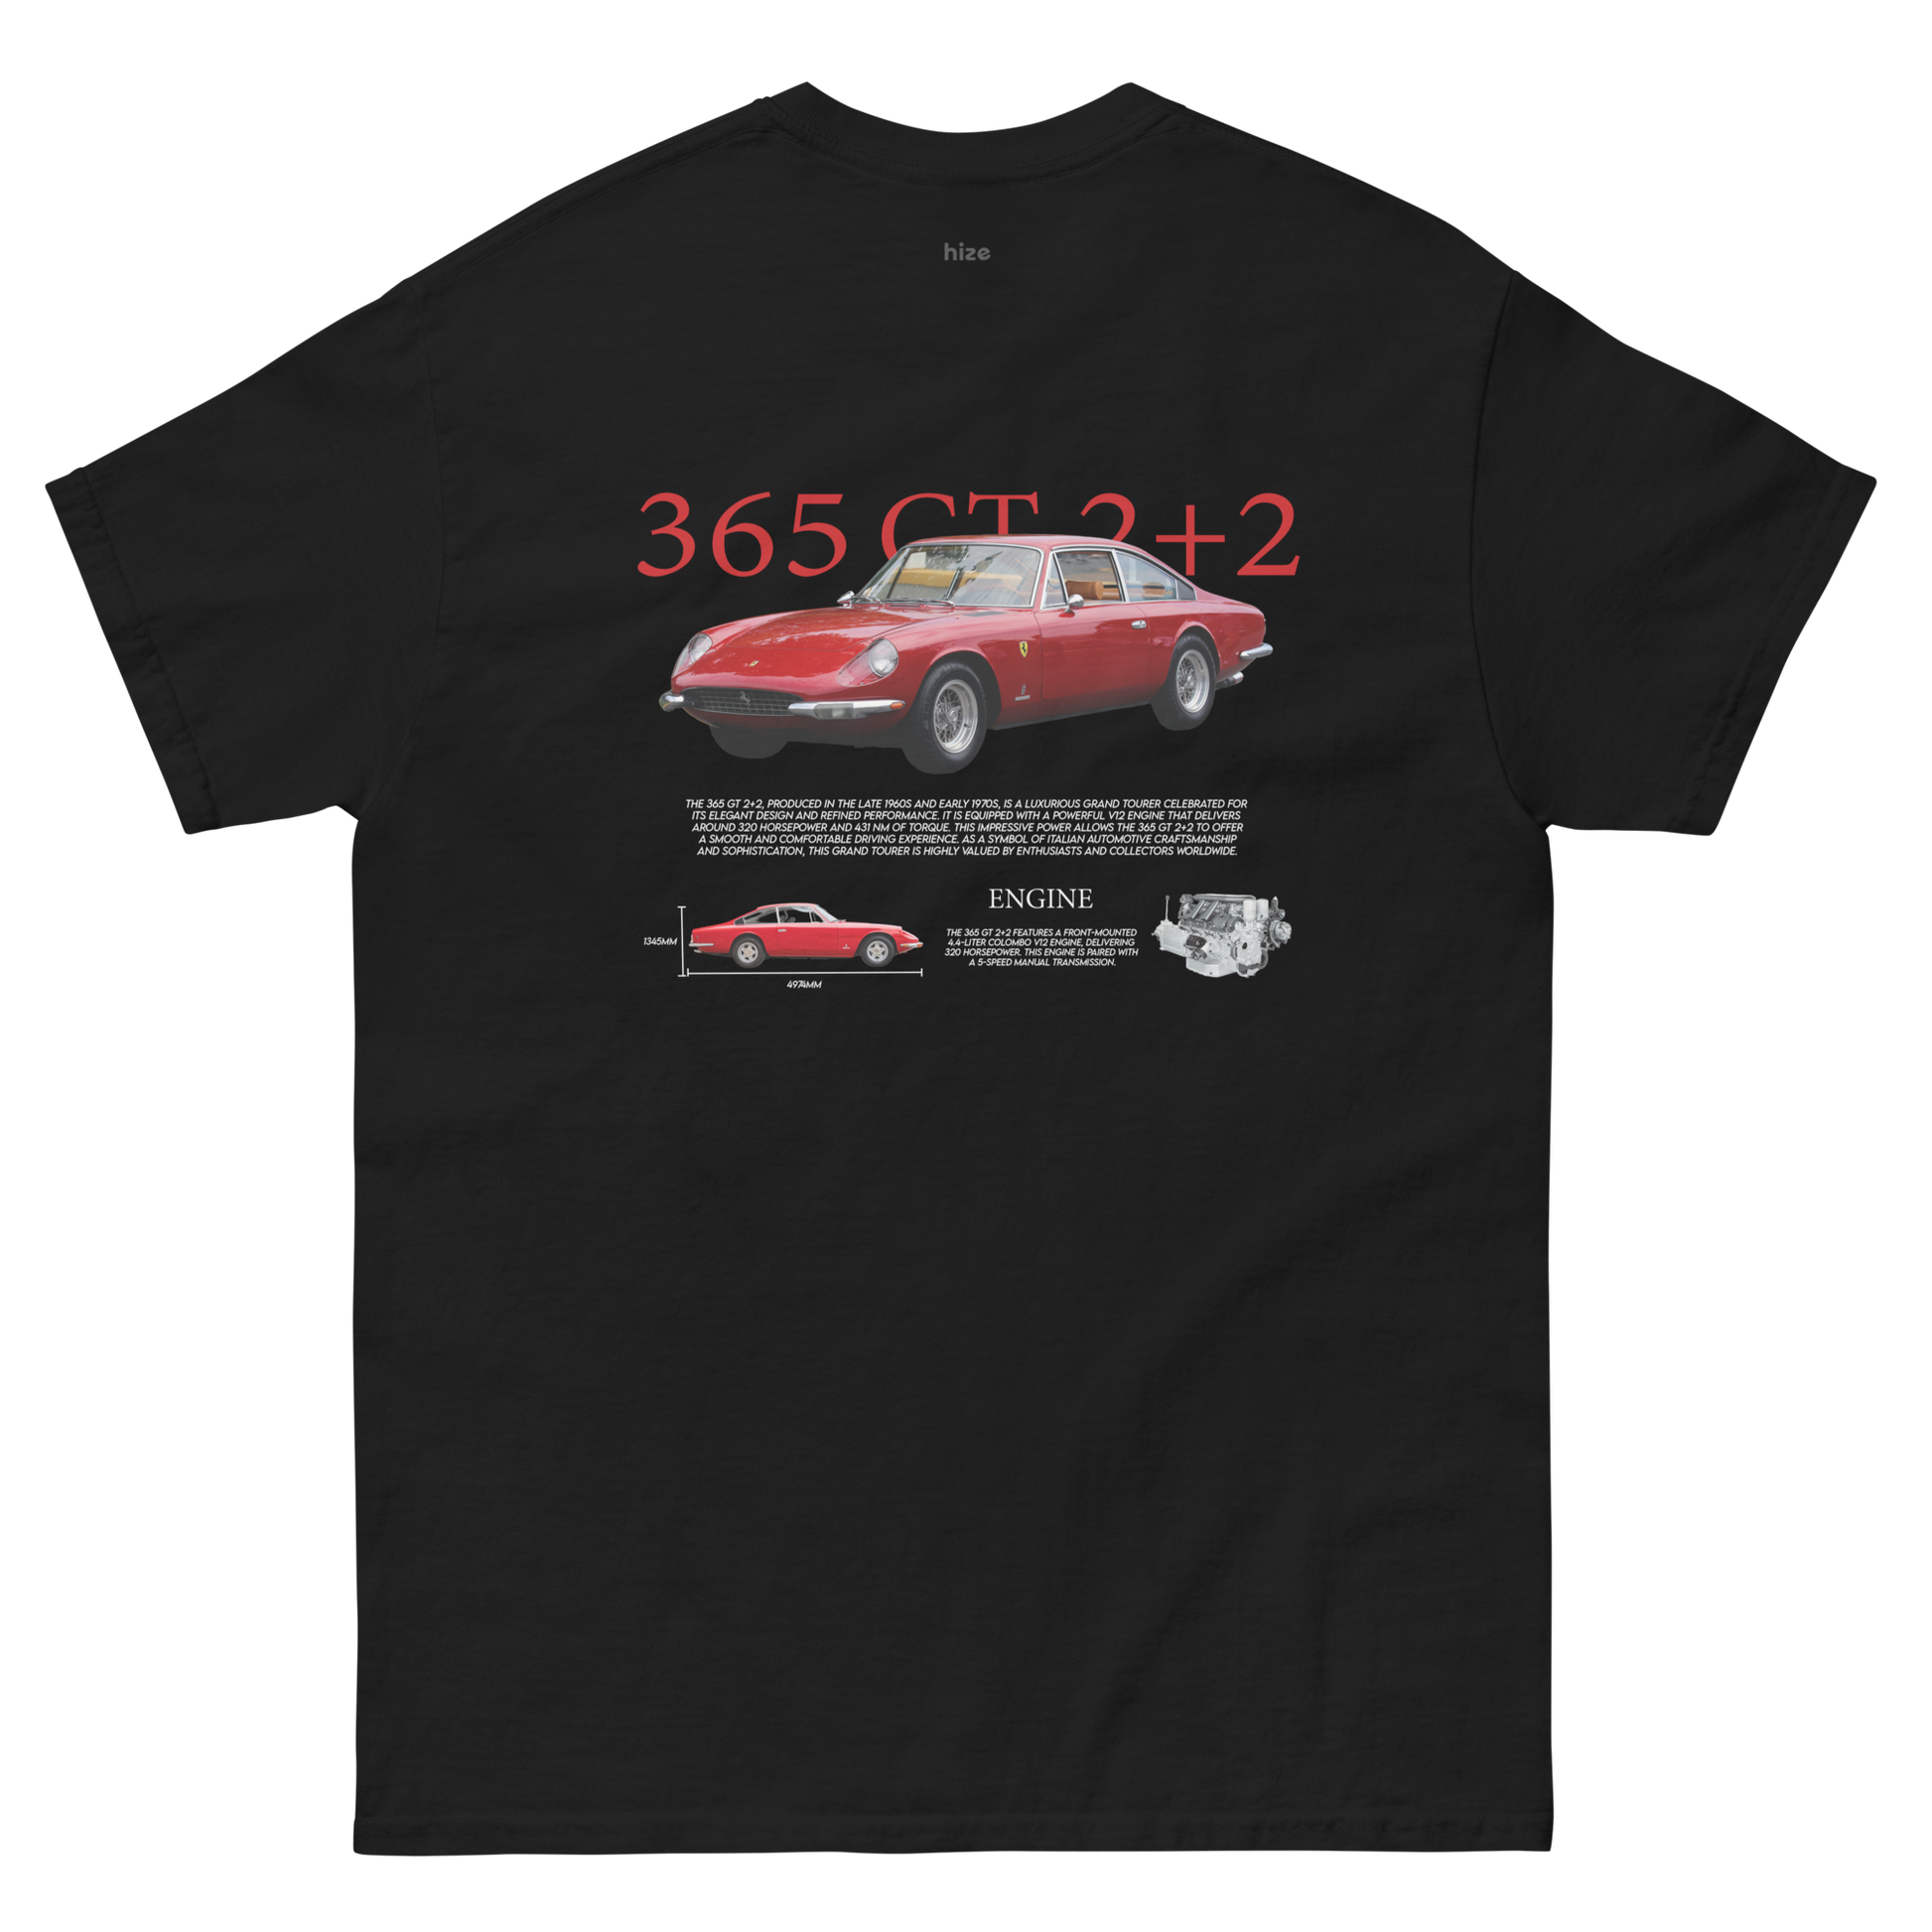 365 GT 2+2 T-shirt - Black Back View